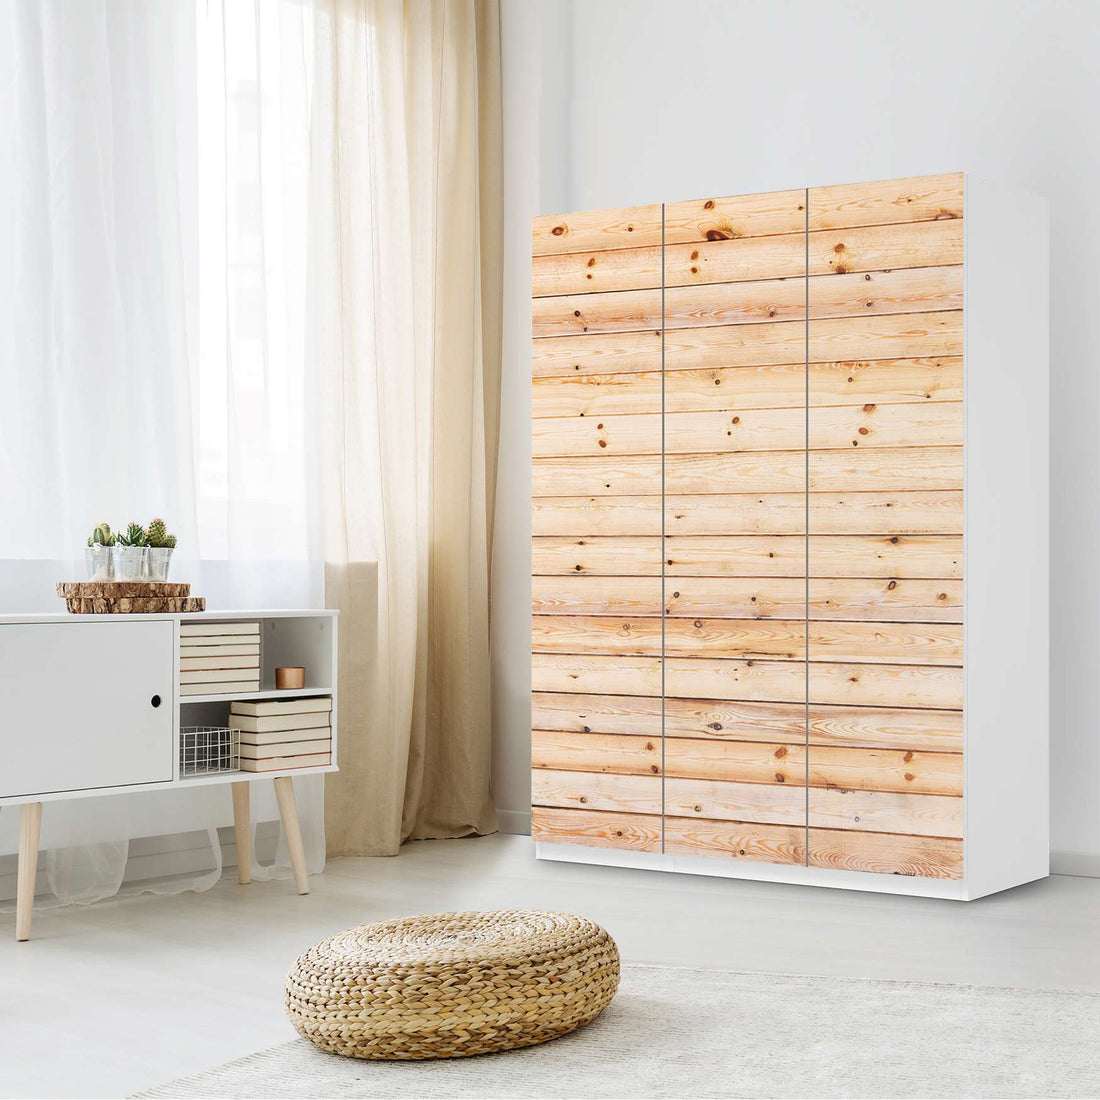 Folie für Möbel Bright Planks - IKEA Pax Schrank 201 cm Höhe - 3 Türen - Schlafzimmer